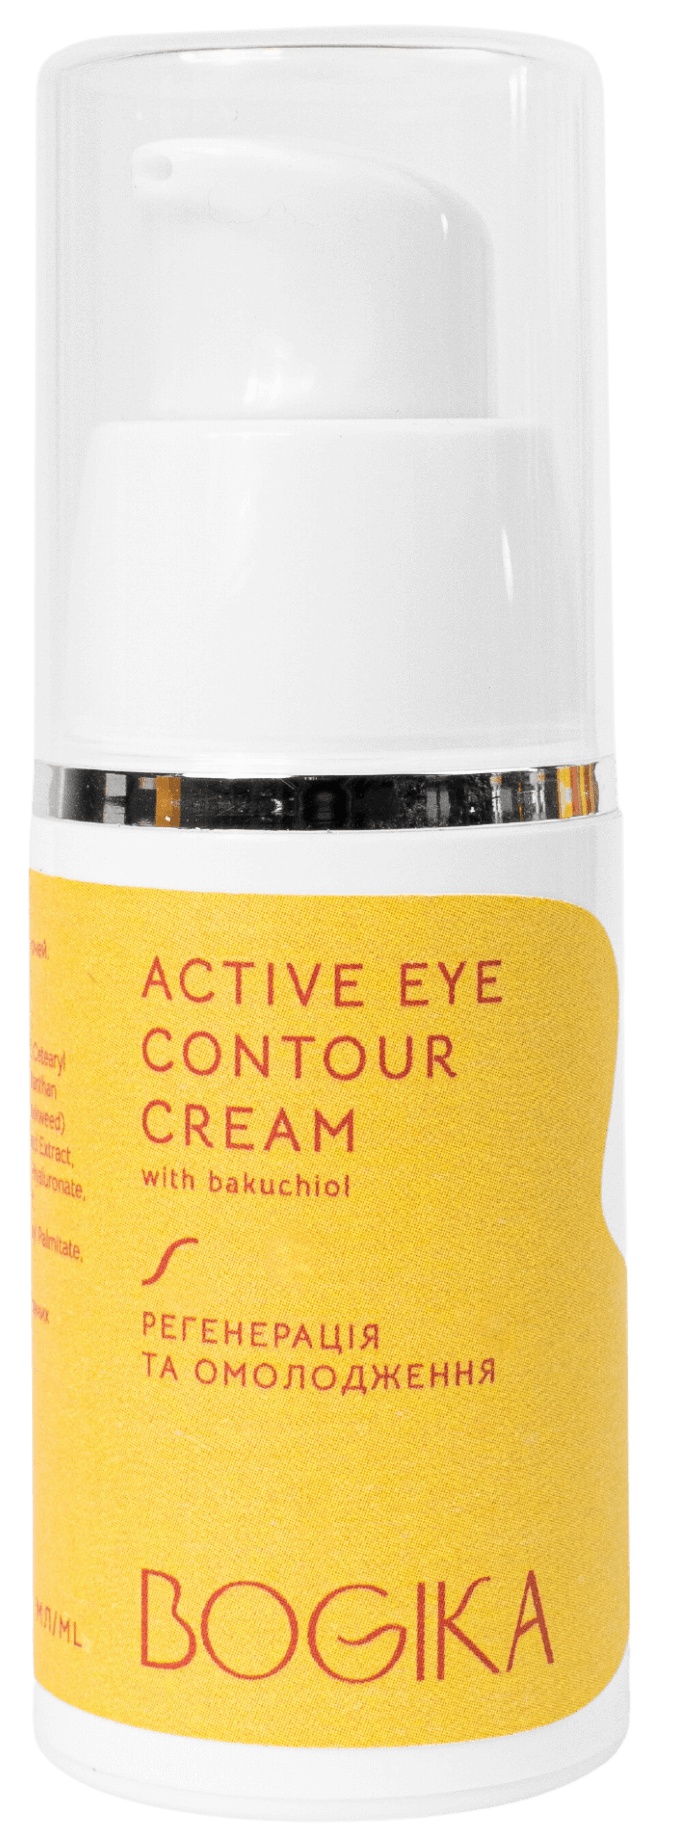 Bogika Active Eye Contour Cream